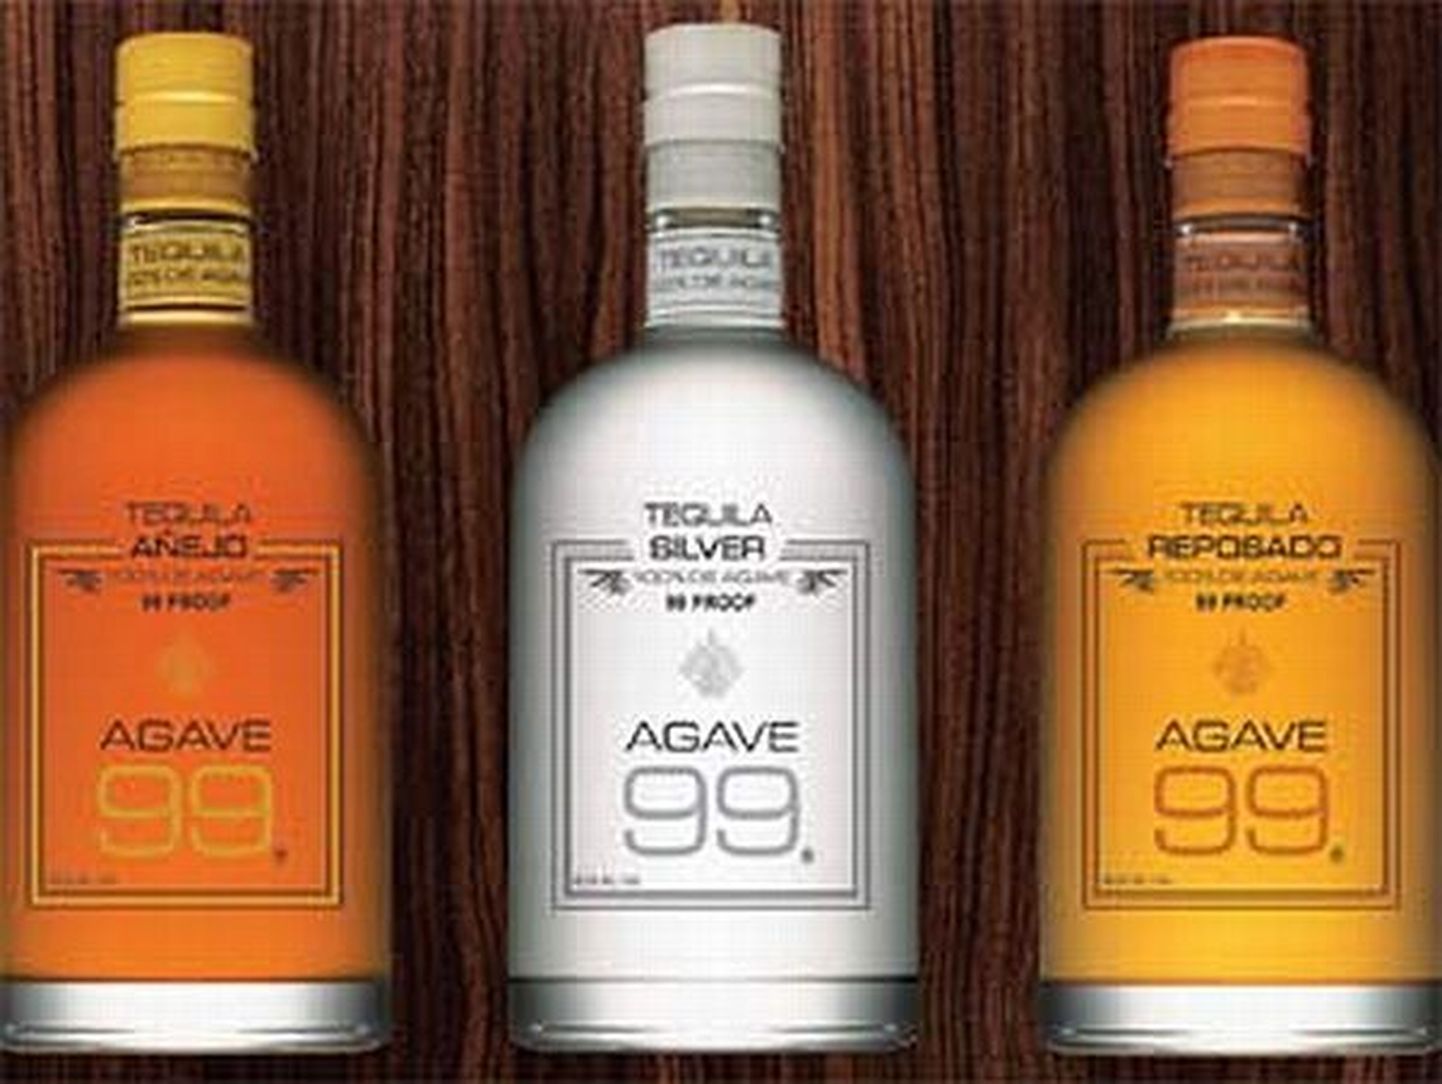 Koššer-tequila Agave 99.